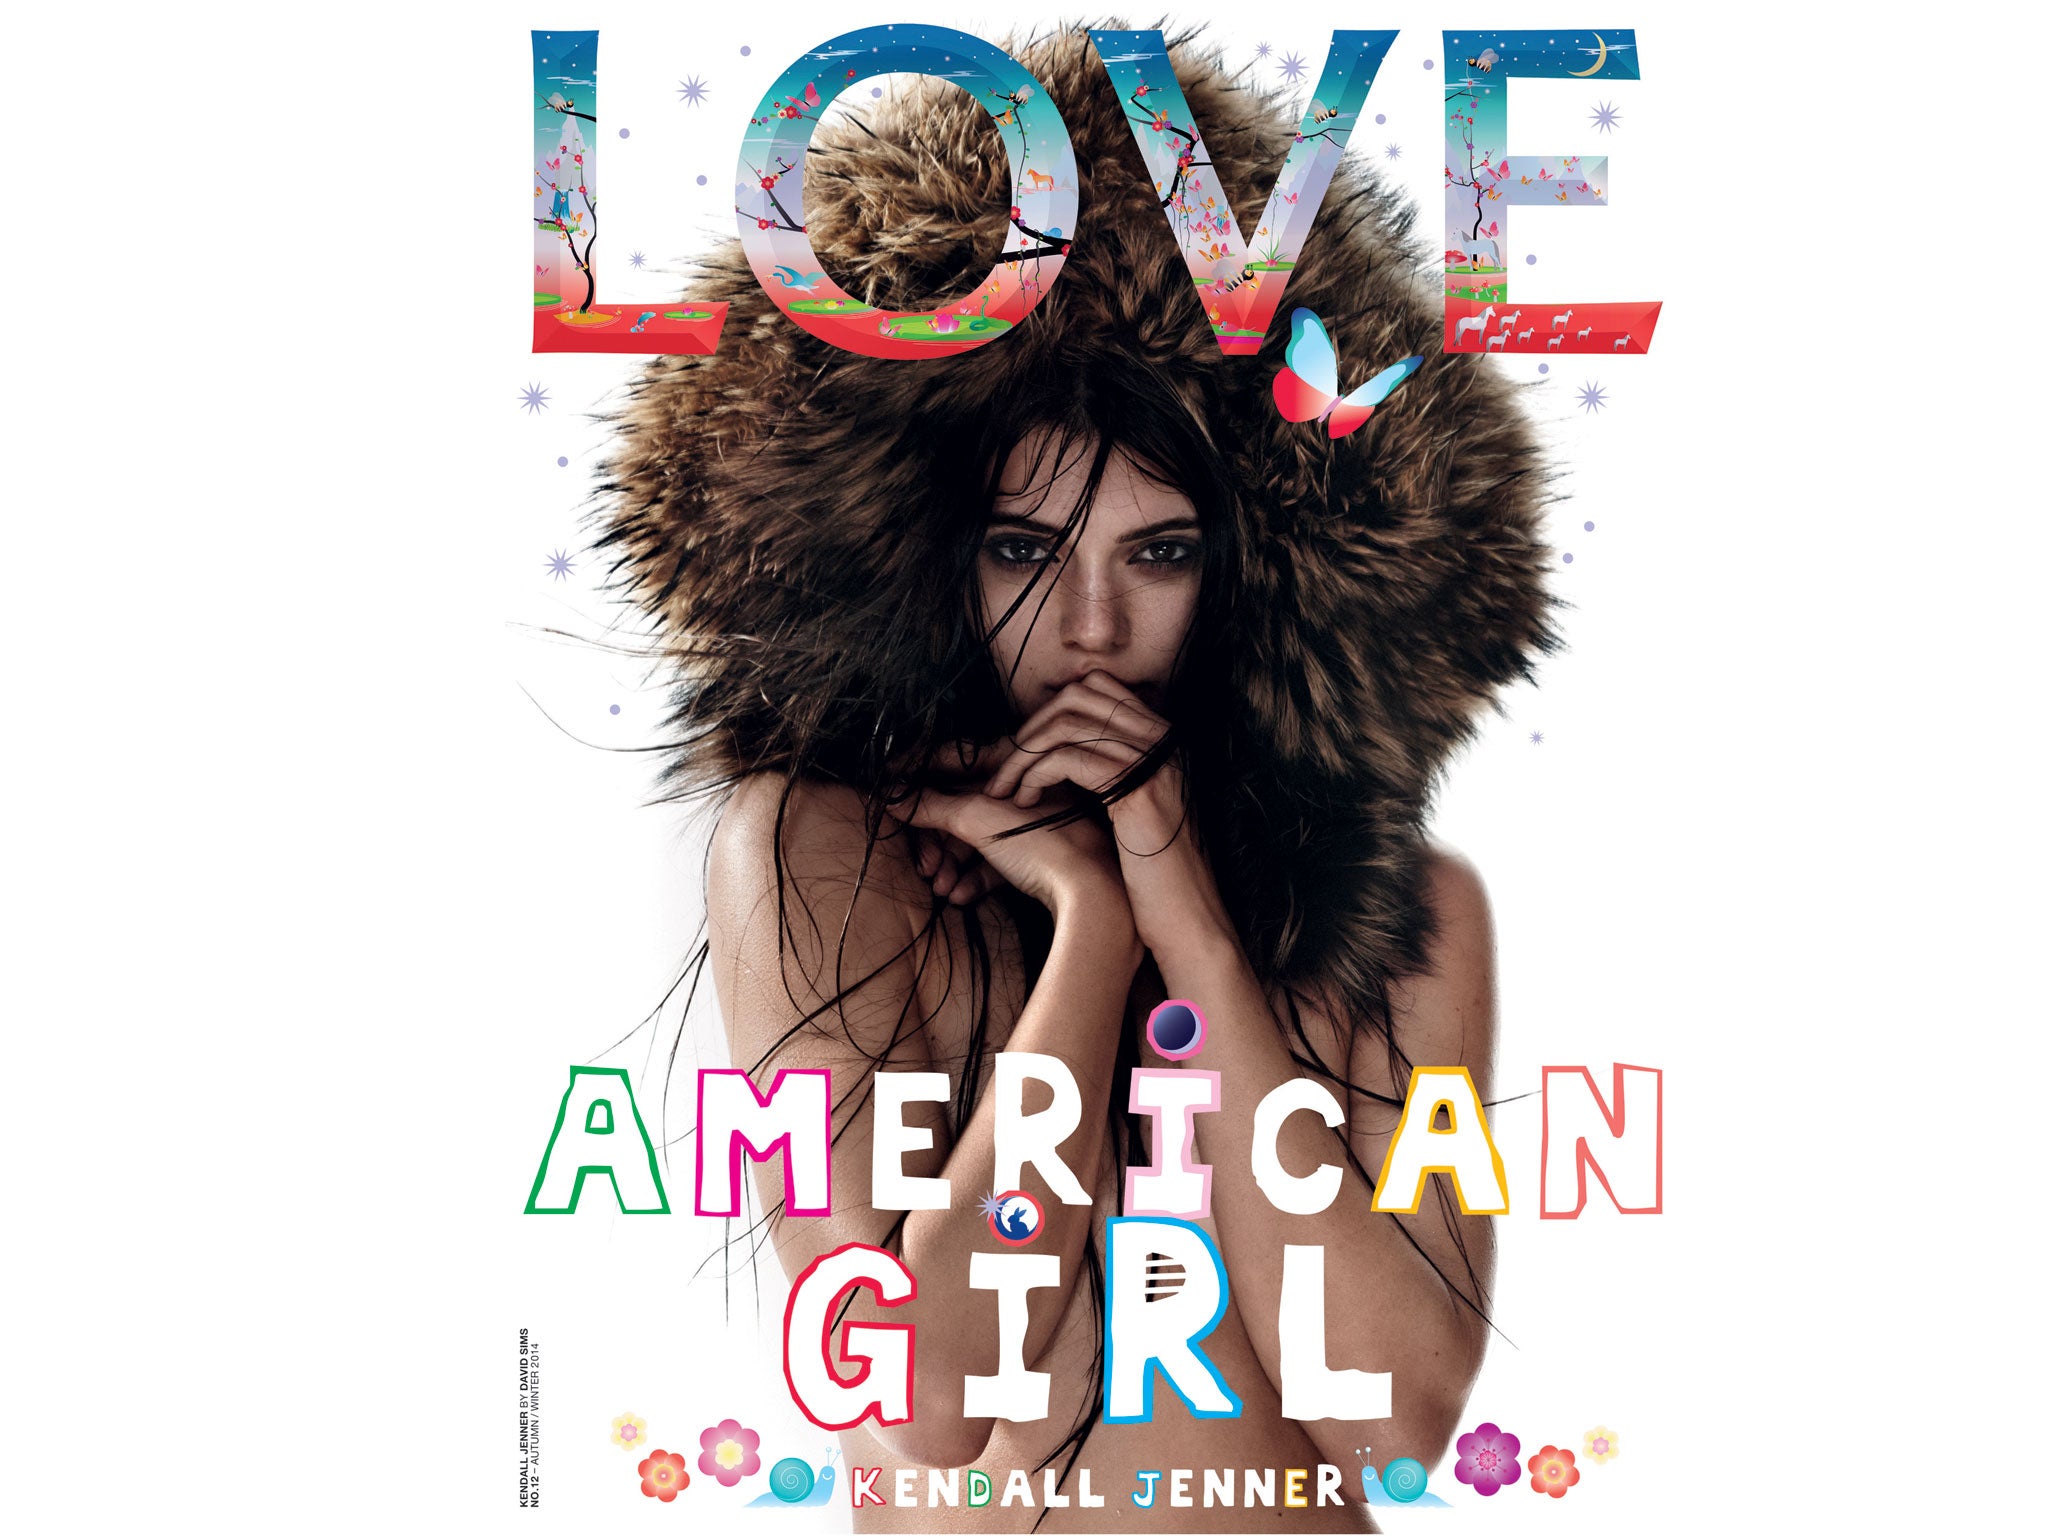 Kendall Jenner Love magazine